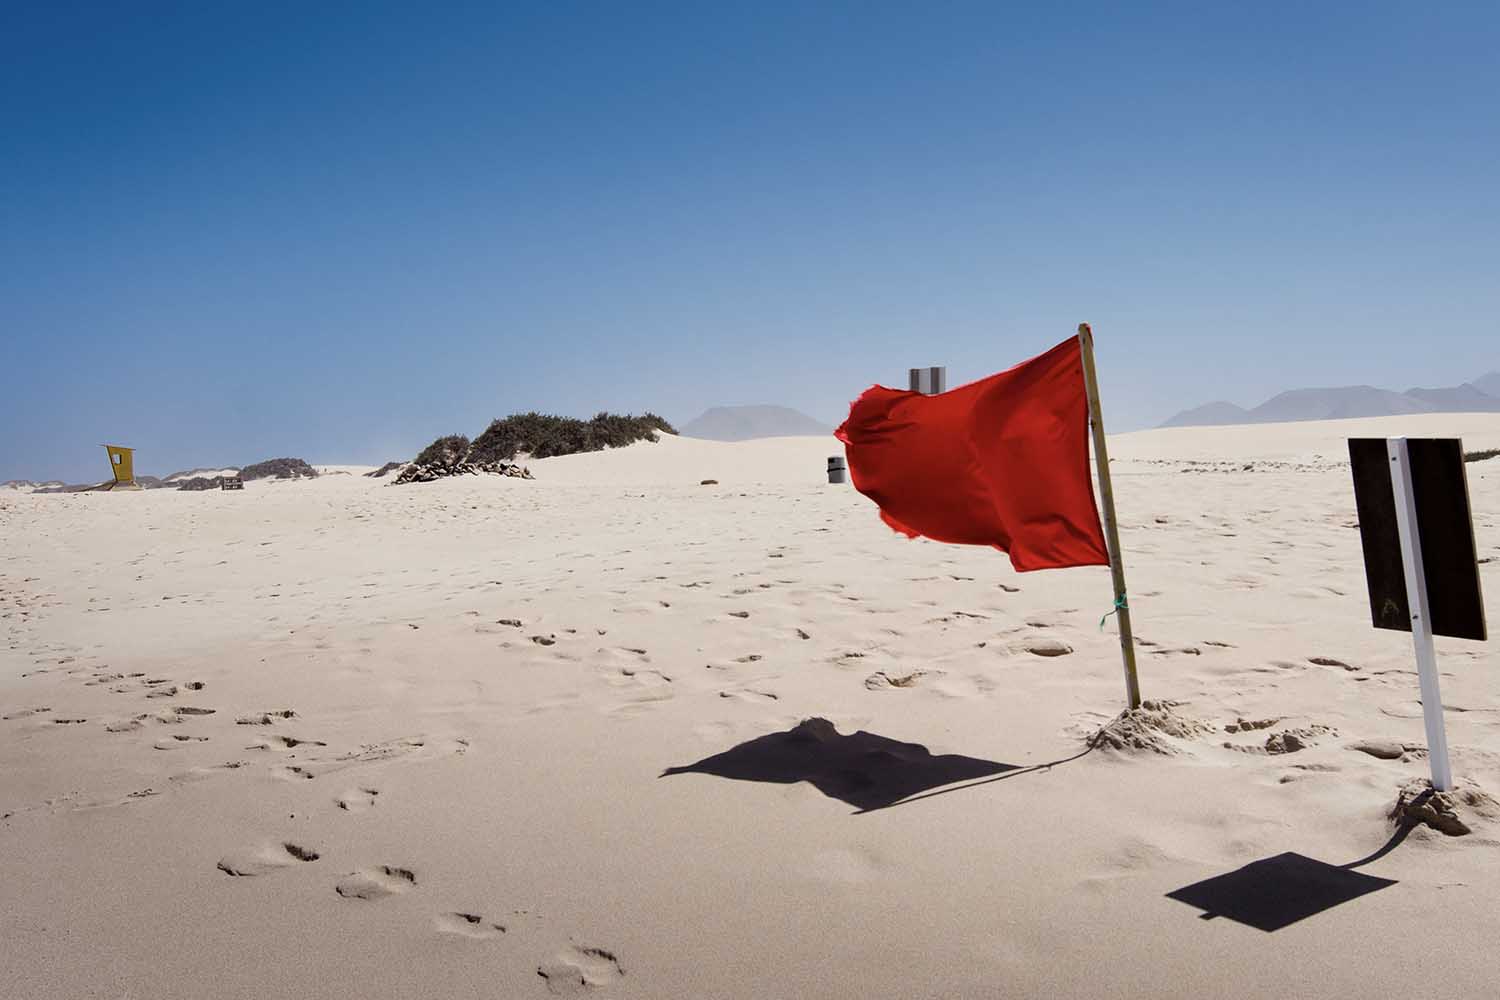 A red flag waving on a beach.